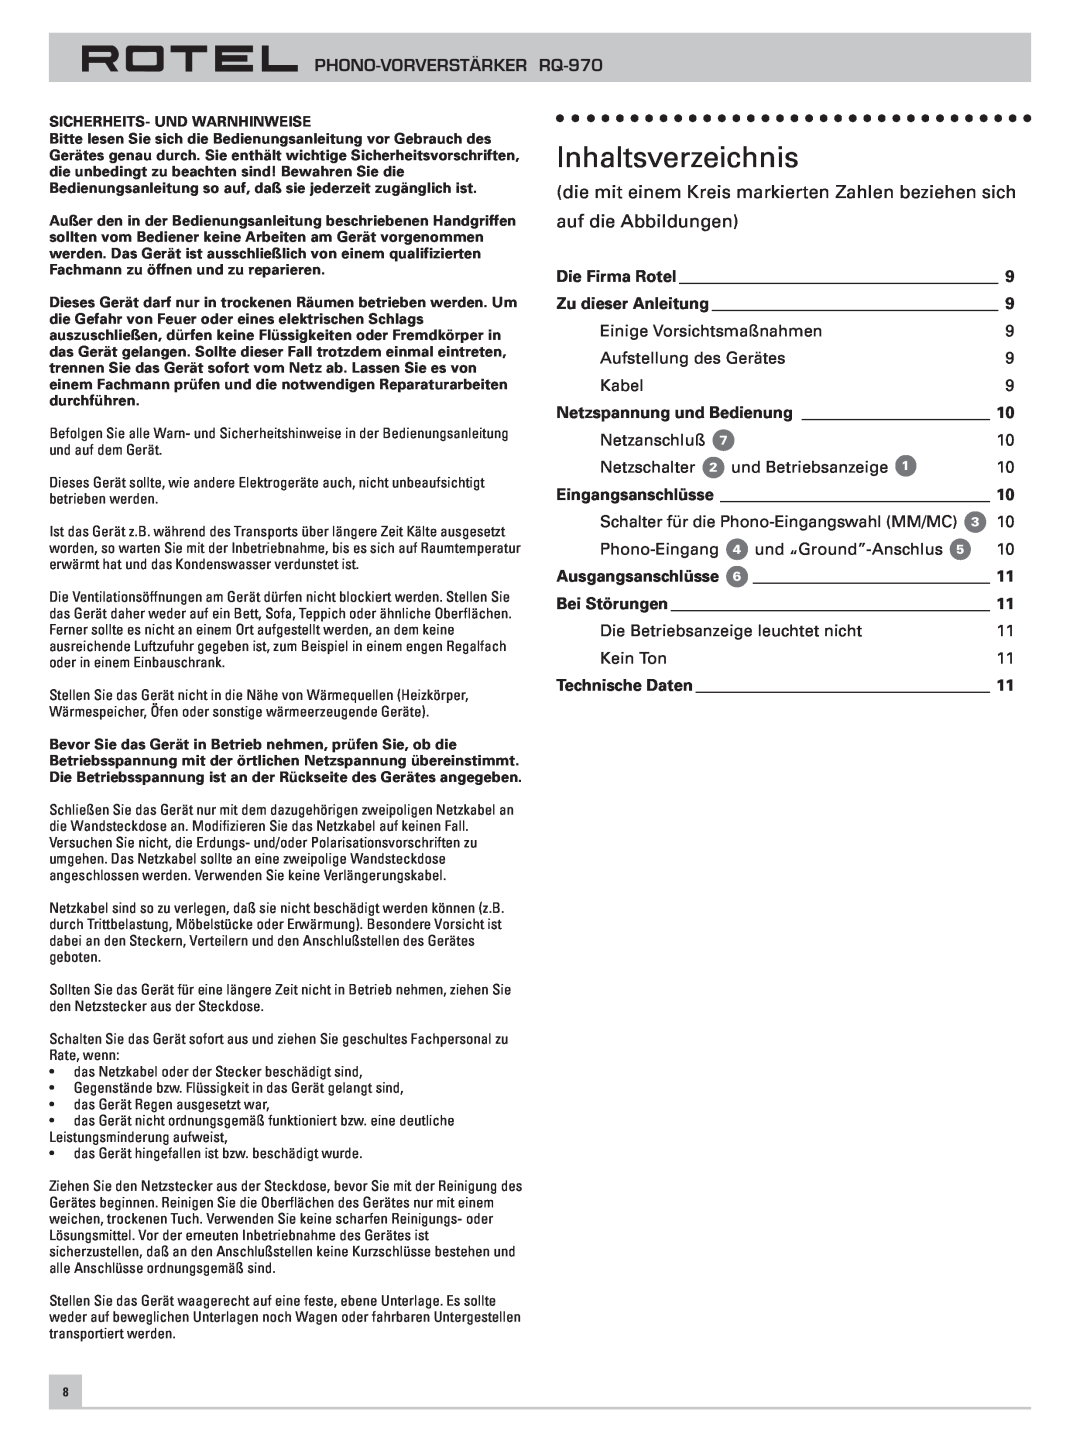 Rotel RQ-970 owner manual Inhaltsverzeichnis, auf die Abbildungen 